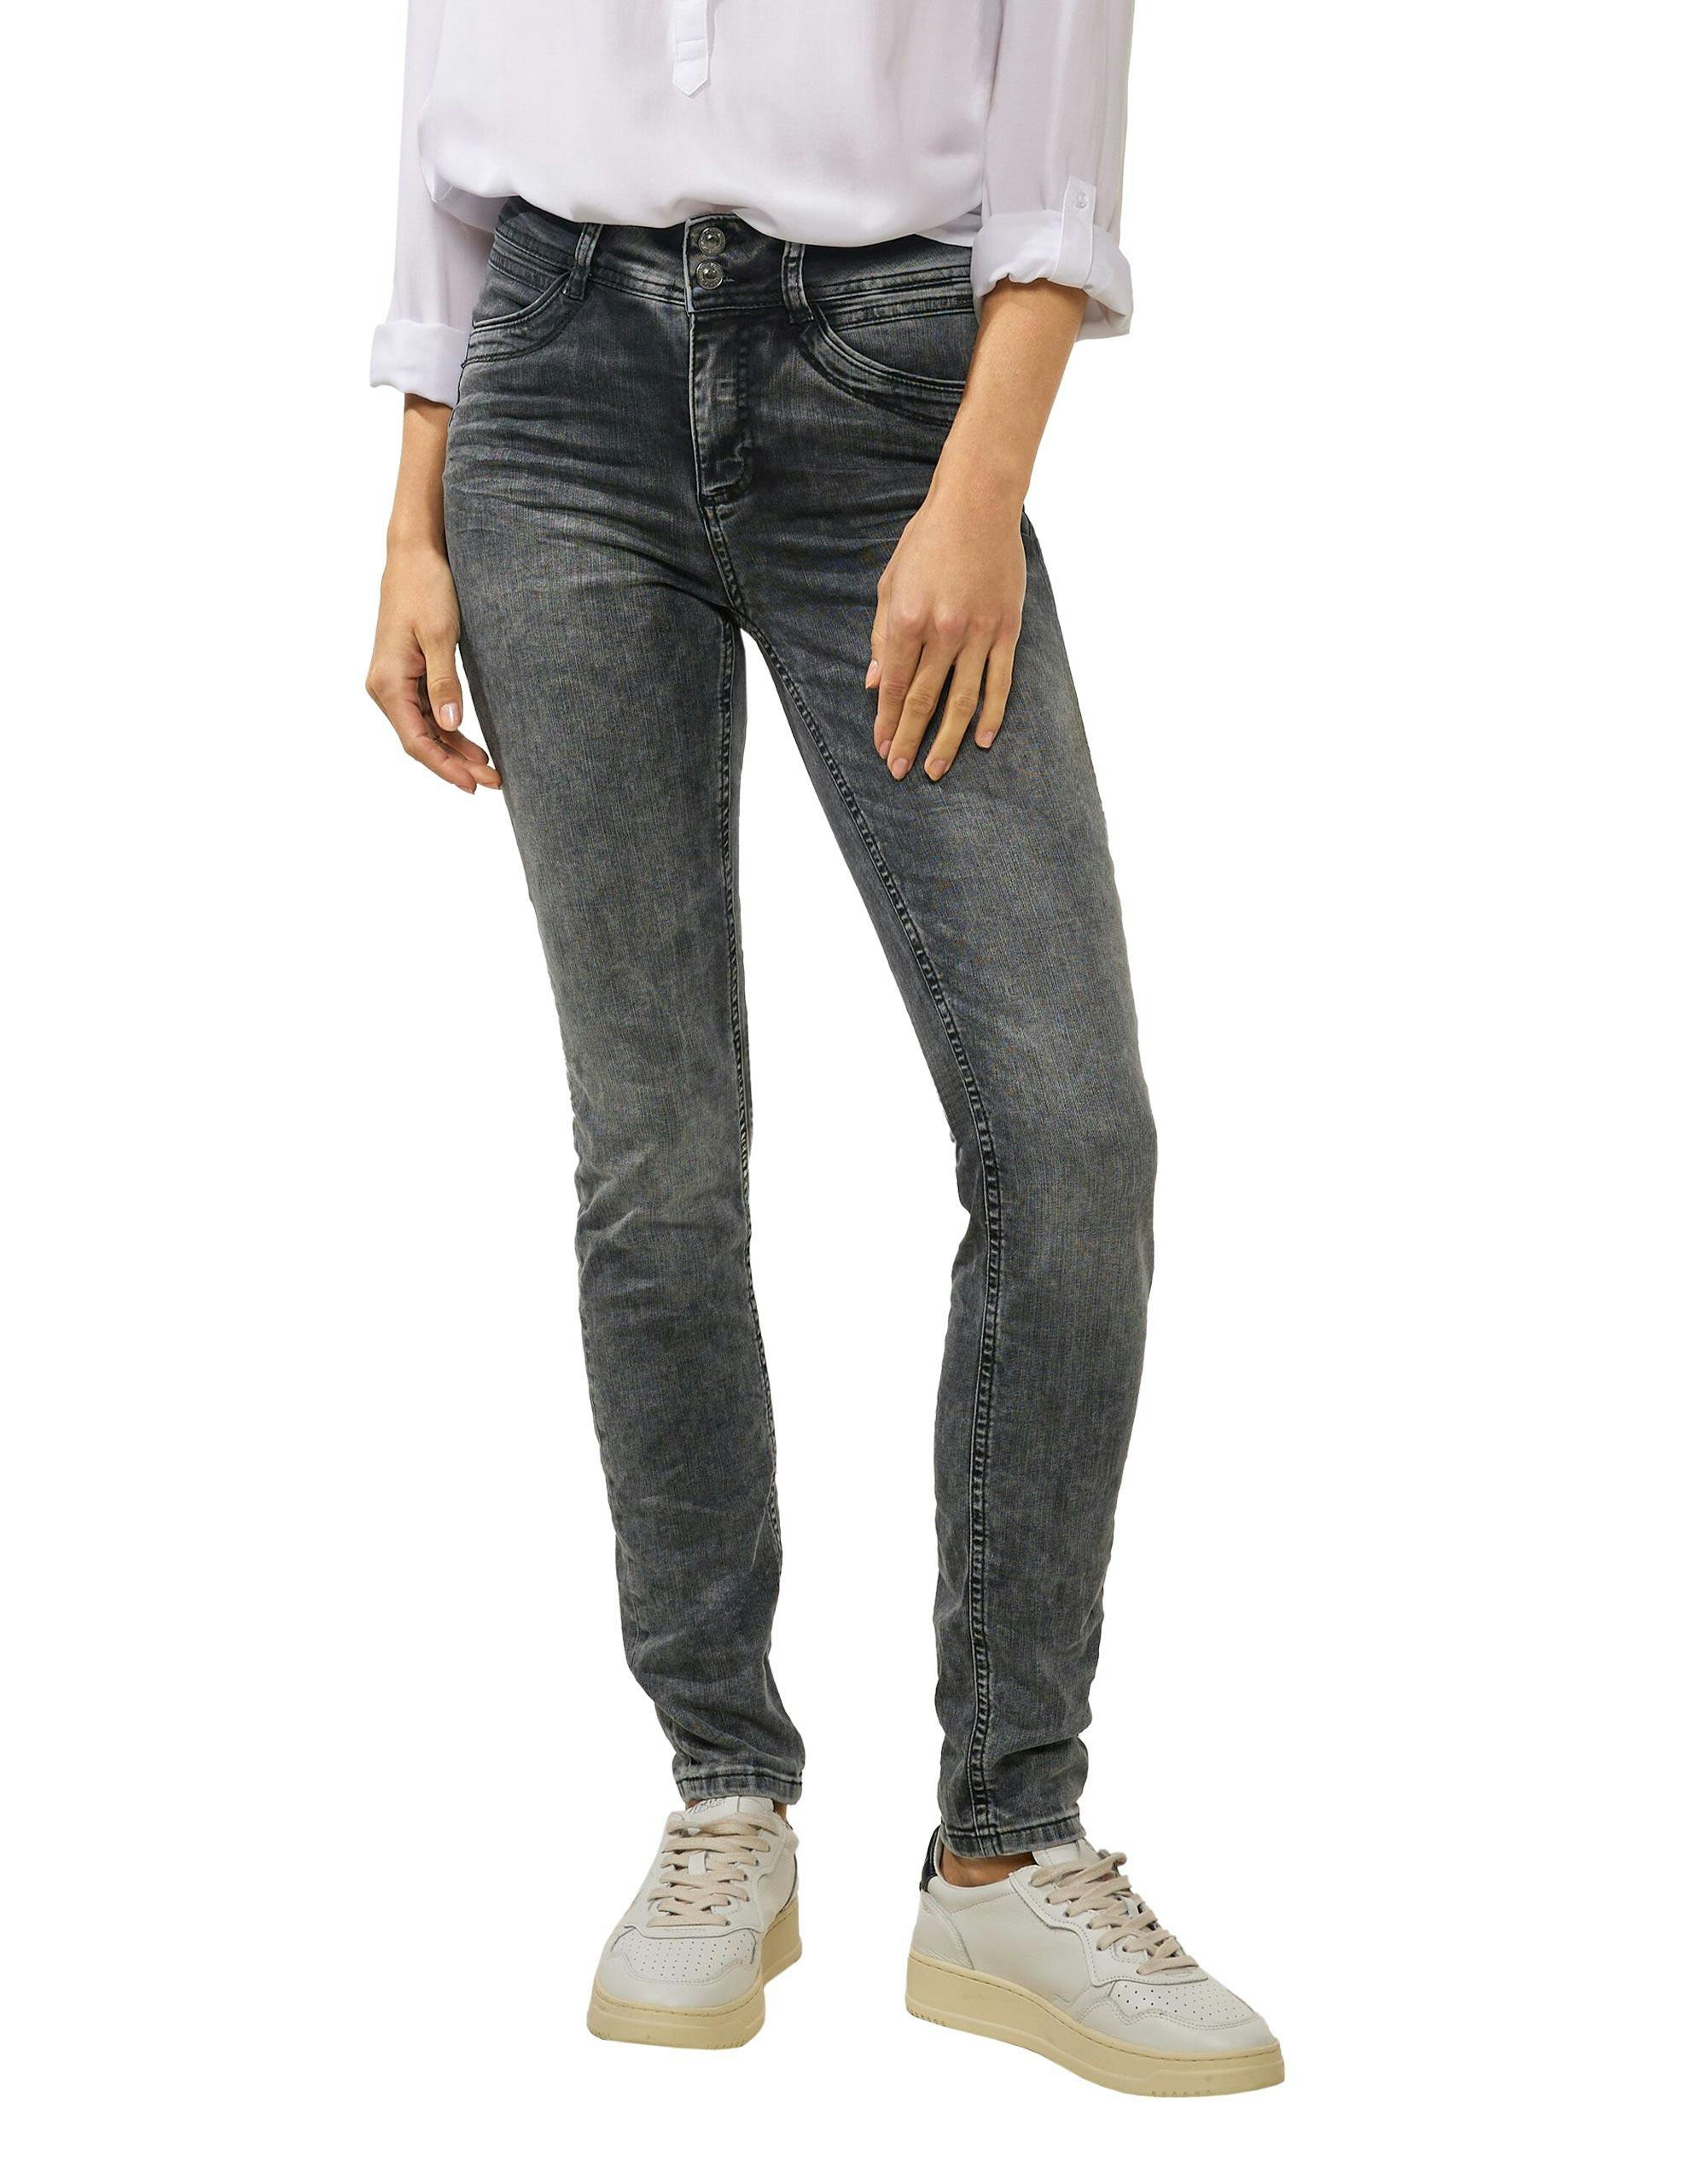 ADLER | One - Street Slim Mode | Fit 4-Pocket Jeans, Onlineshop